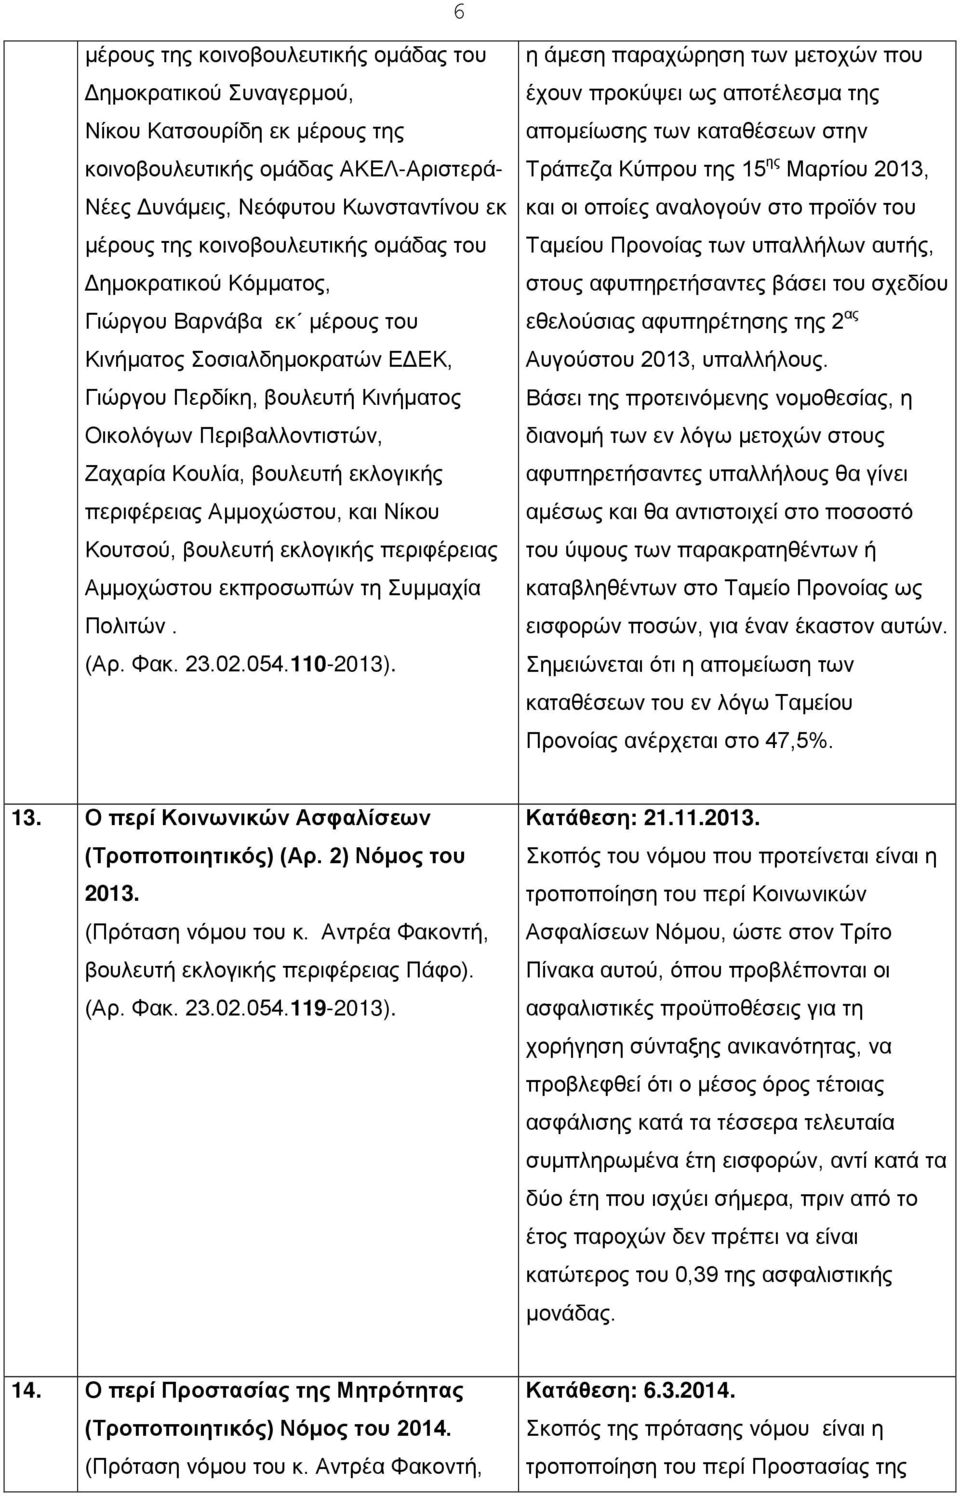 βουλευτή εκλογικής περιφέρειας Αμμοχώστου, και Νίκου Κουτσού, βουλευτή εκλογικής περιφέρειας Αμμοχώστου εκπροσωπών τη Συμμαχία Πολιτών. (Αρ. Φακ. 23.02.054.110-2013).